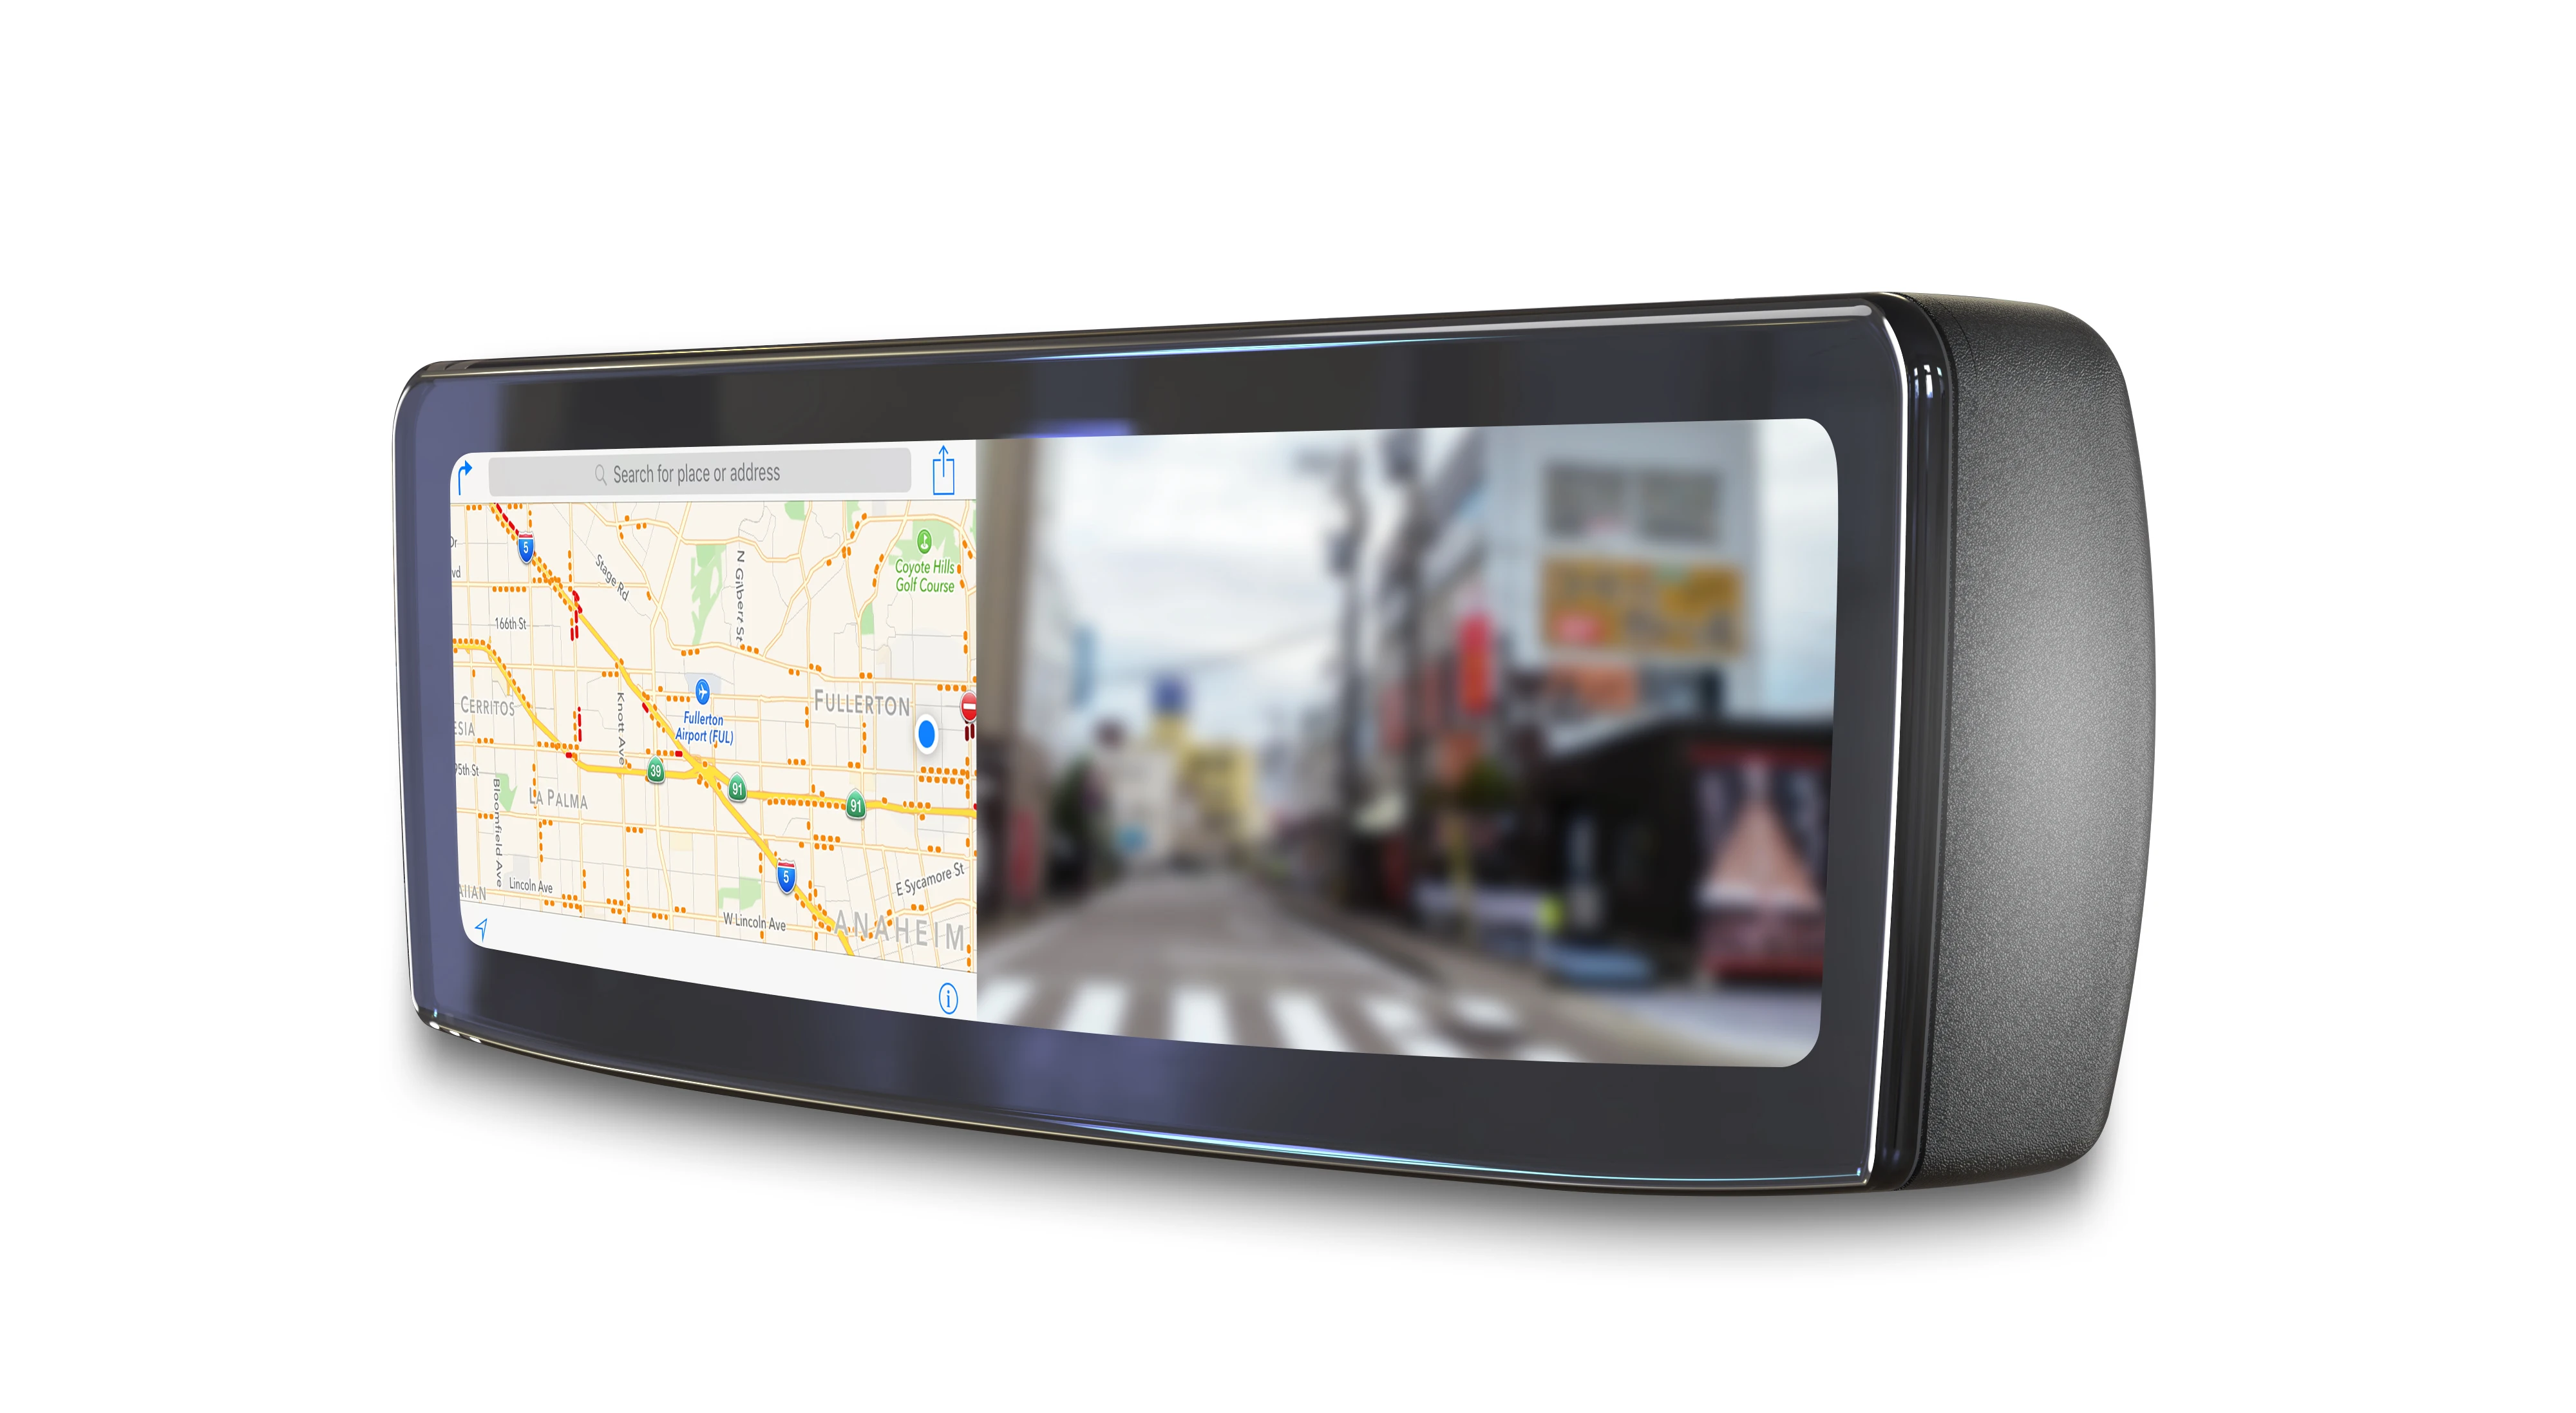 4 3 液晶ミラーモニターバックミラーカメラ表示 Gps ナビゲーション Usb でミラーリングワイヤー操作に Waze Google マップアンドロイド Iphone Buy Gps ナビゲーションミラーリング Waze Google 地図ナビゲーション 電動バックミラー Product On Alibaba Com